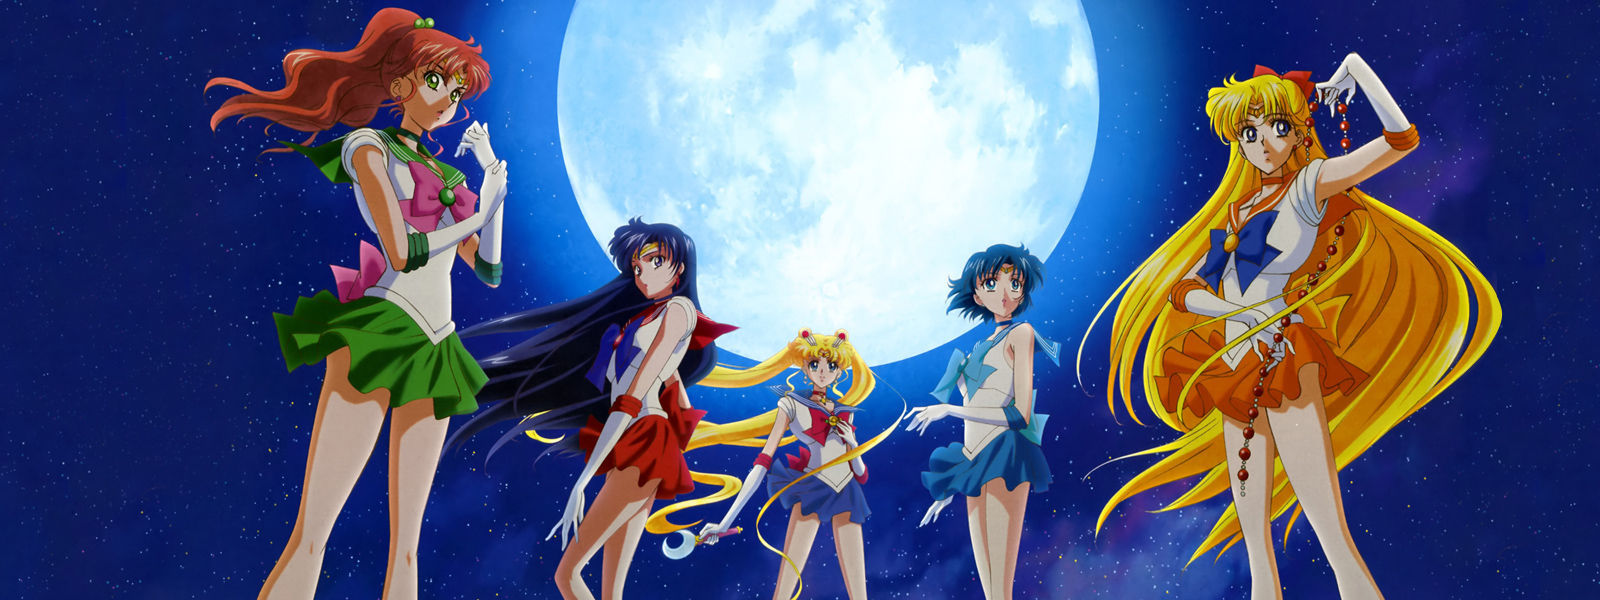 9183 - ¿Reconoces a los personajes de Sailor Moon?